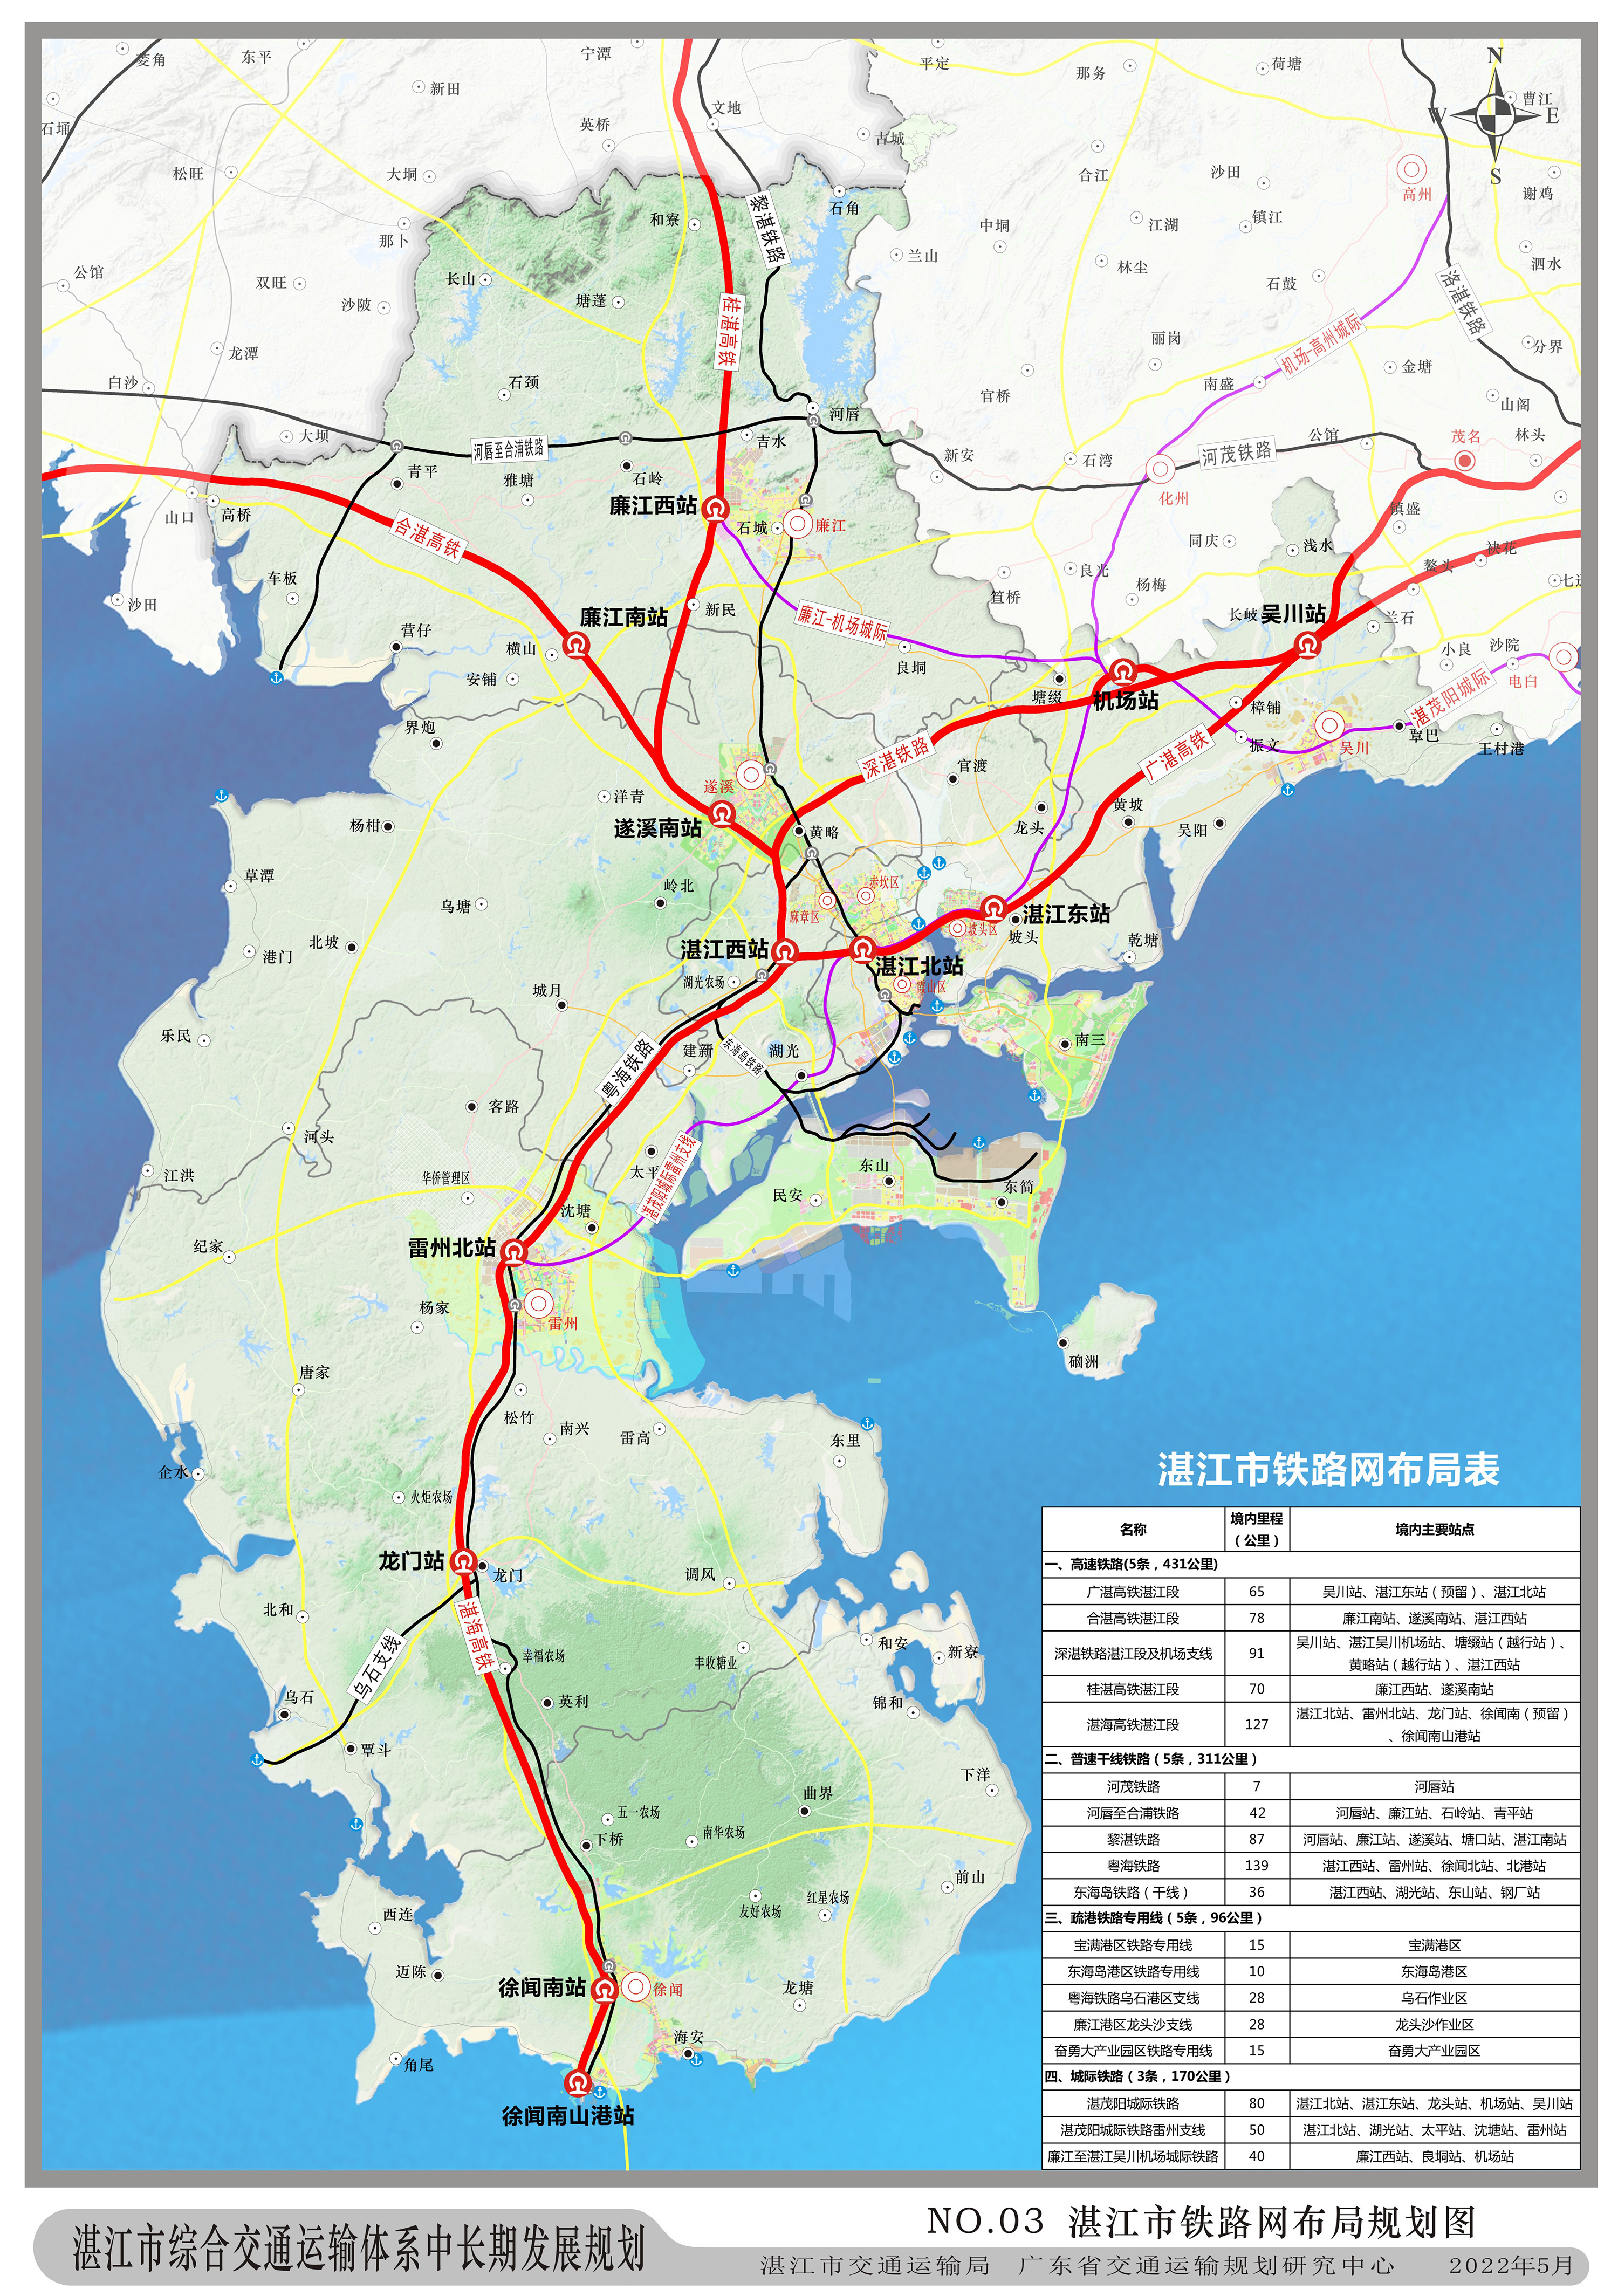 湛江市综合交通运输体系中长期发展规划附图-3.jpg